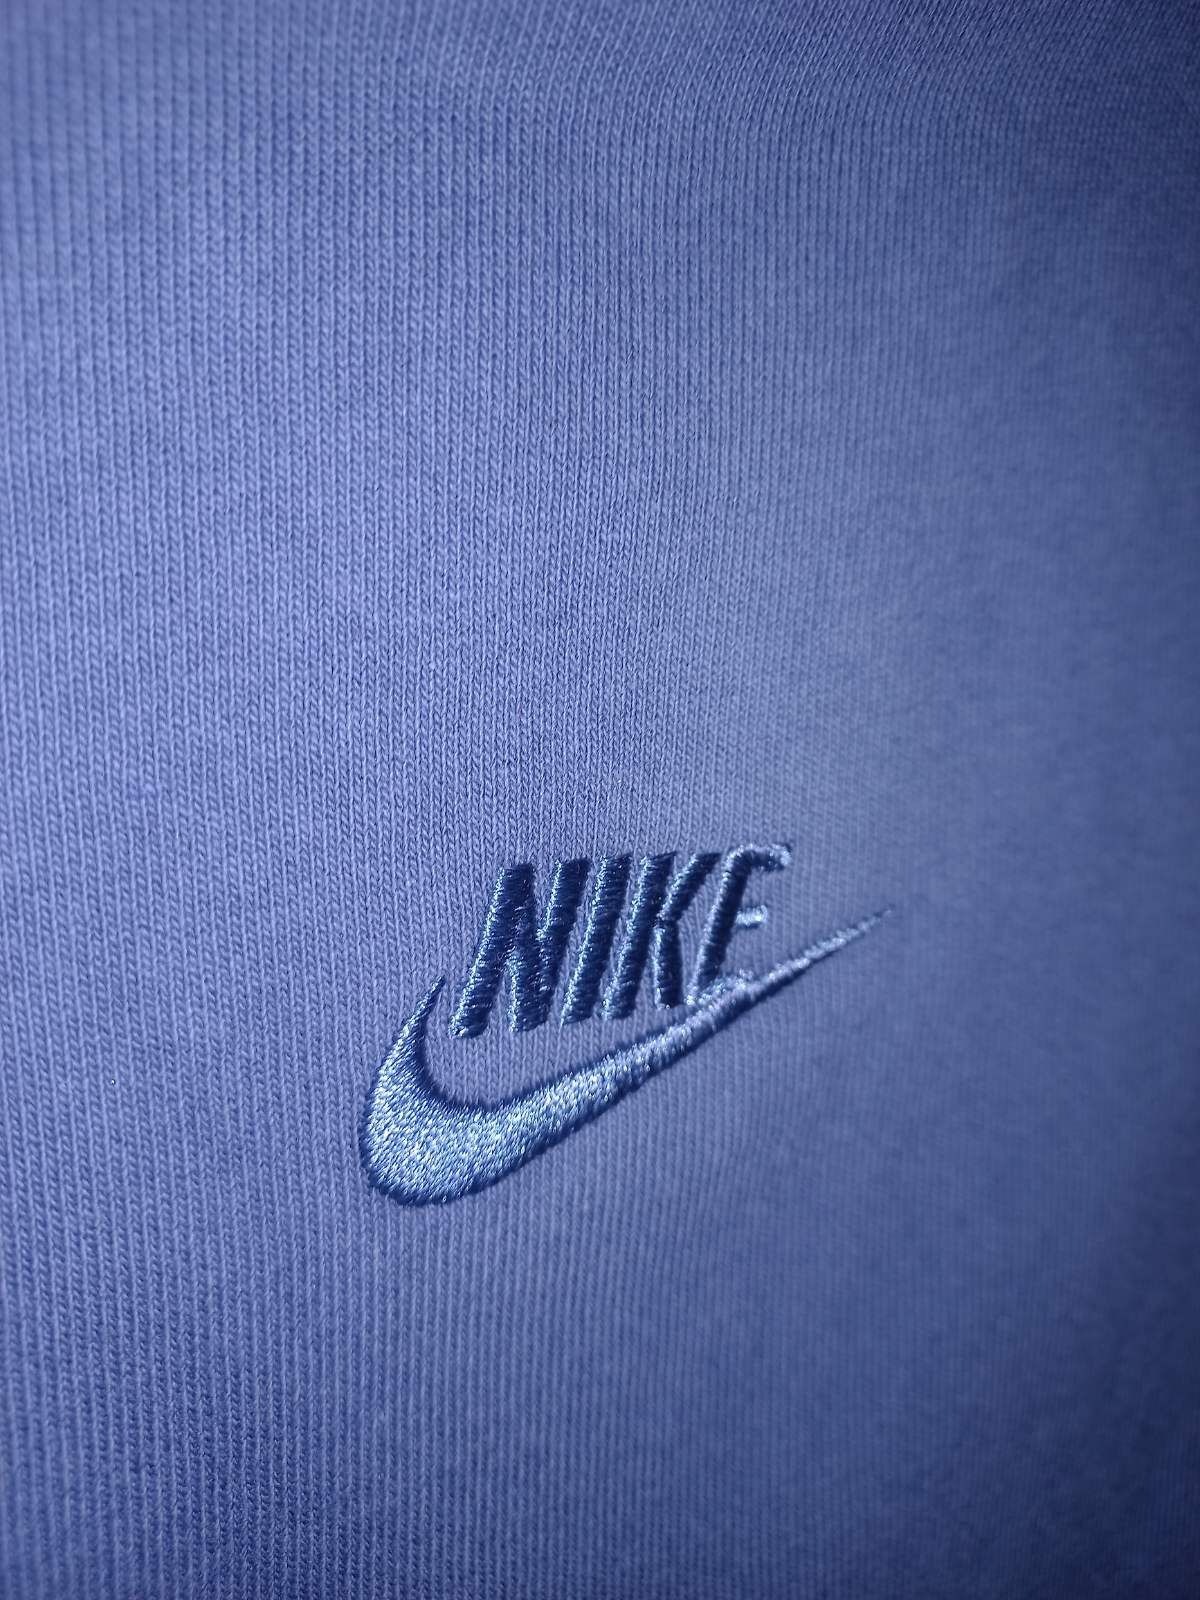 Оригинална мъжка тениска Nike Loose Fit размер S-M-L